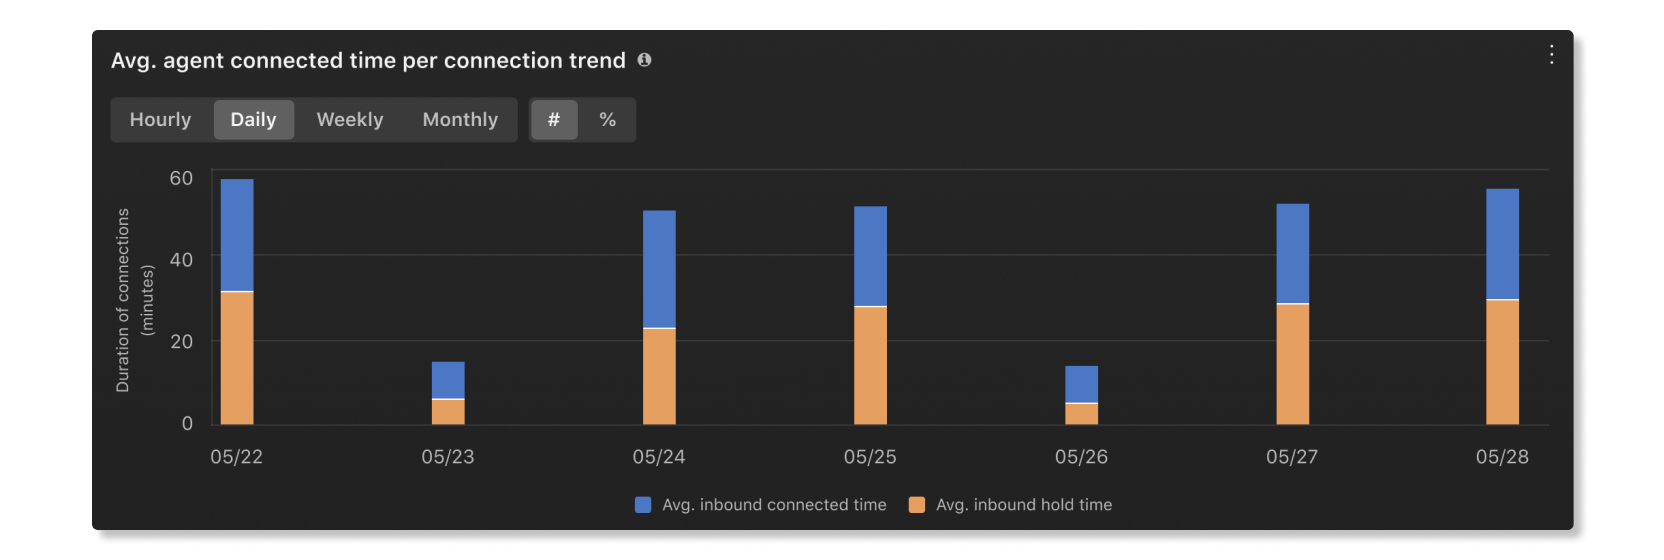 Graphique de tendance moyen du temps de connexion des agents par connexion dans les statistiques de l’agent de l’analyse Customer Essentials